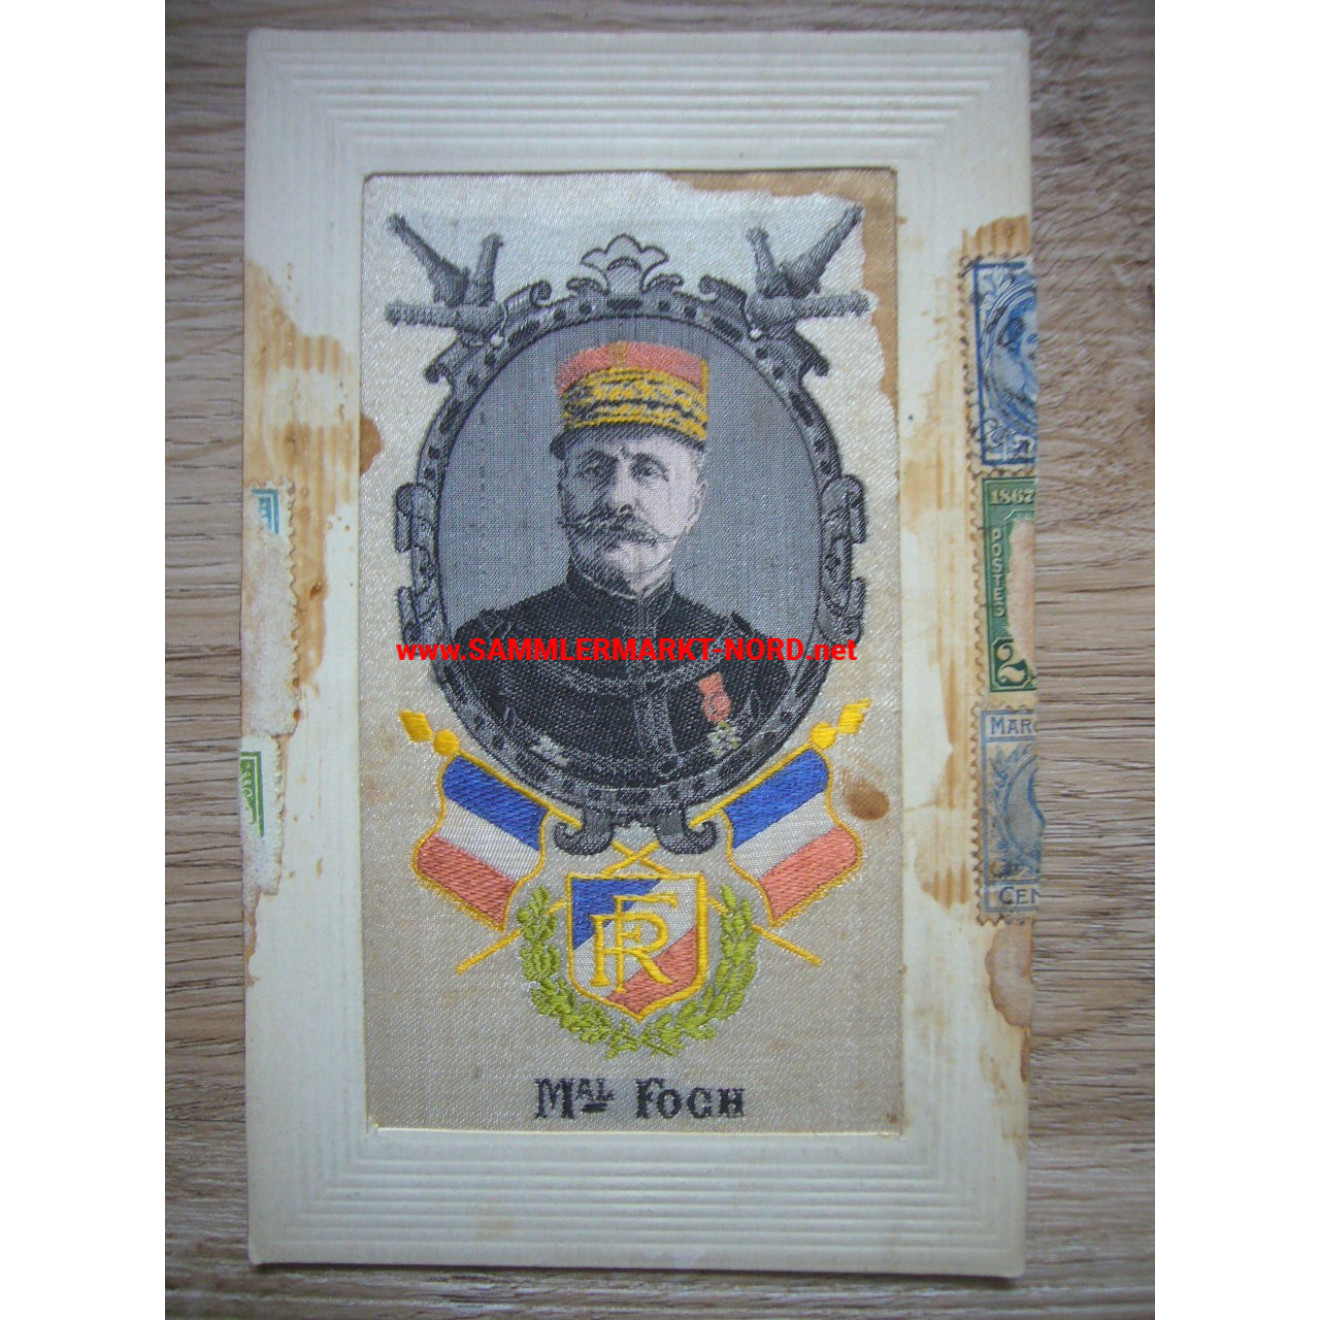 France - Marshal Ferdinand Foch - Silk postcard